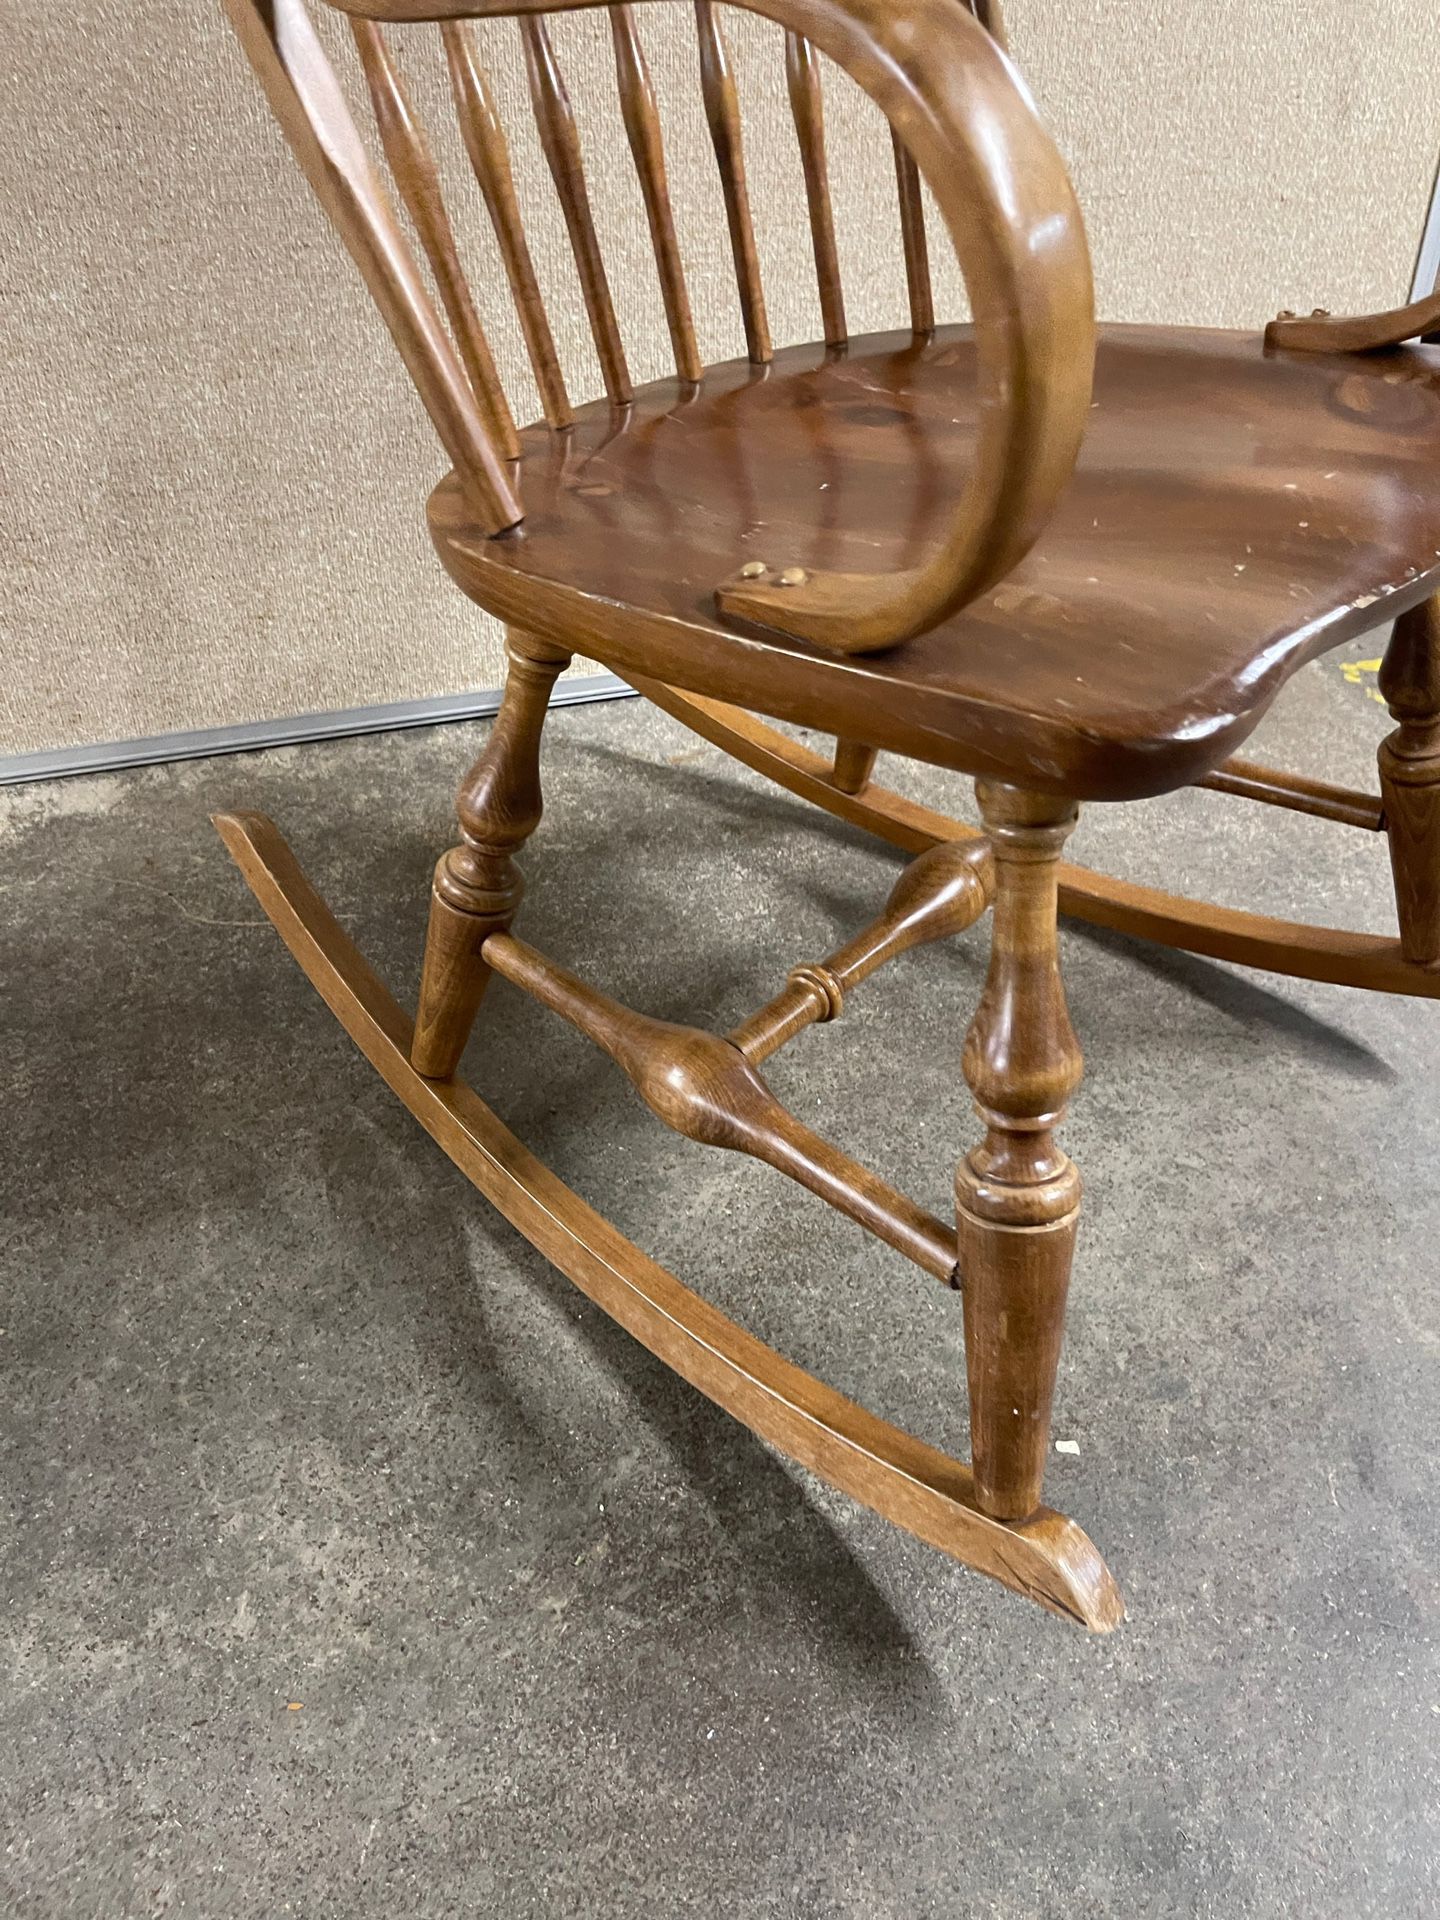 Ethan Allen Country Craftsman Rocker Rocking Chair Pine #19-9307 #657 